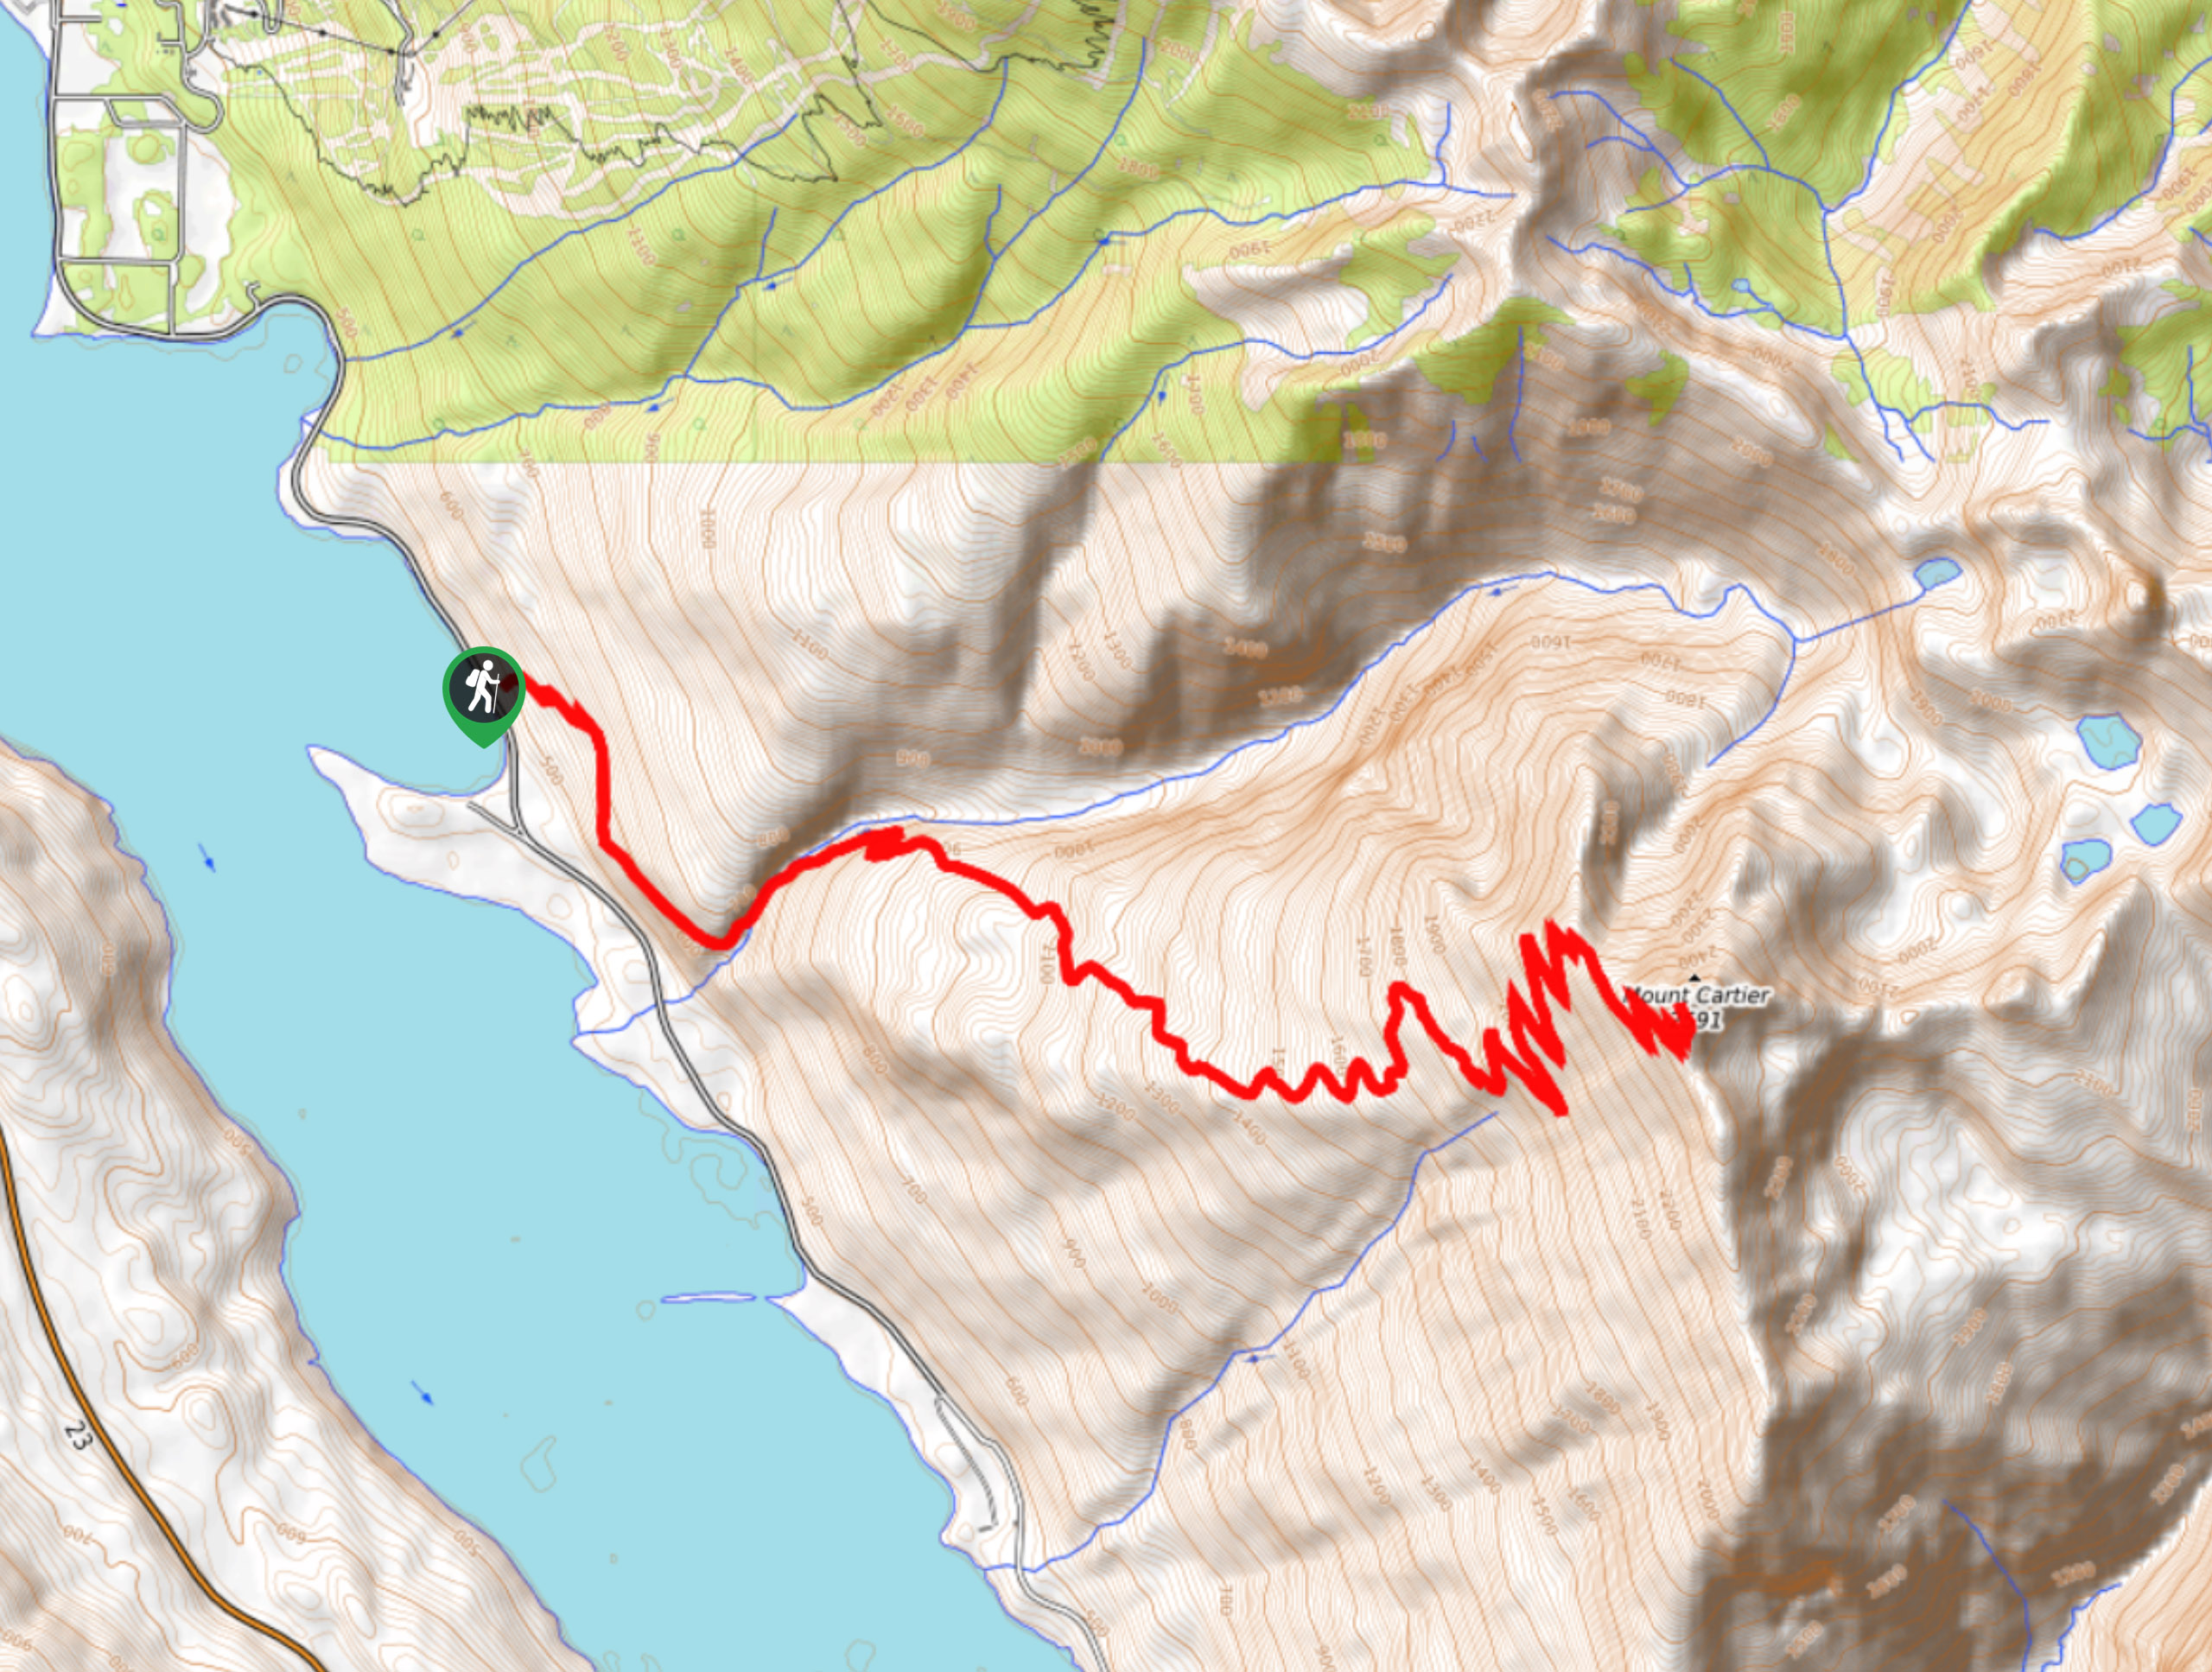 Mount Cartier Peak Trail Map